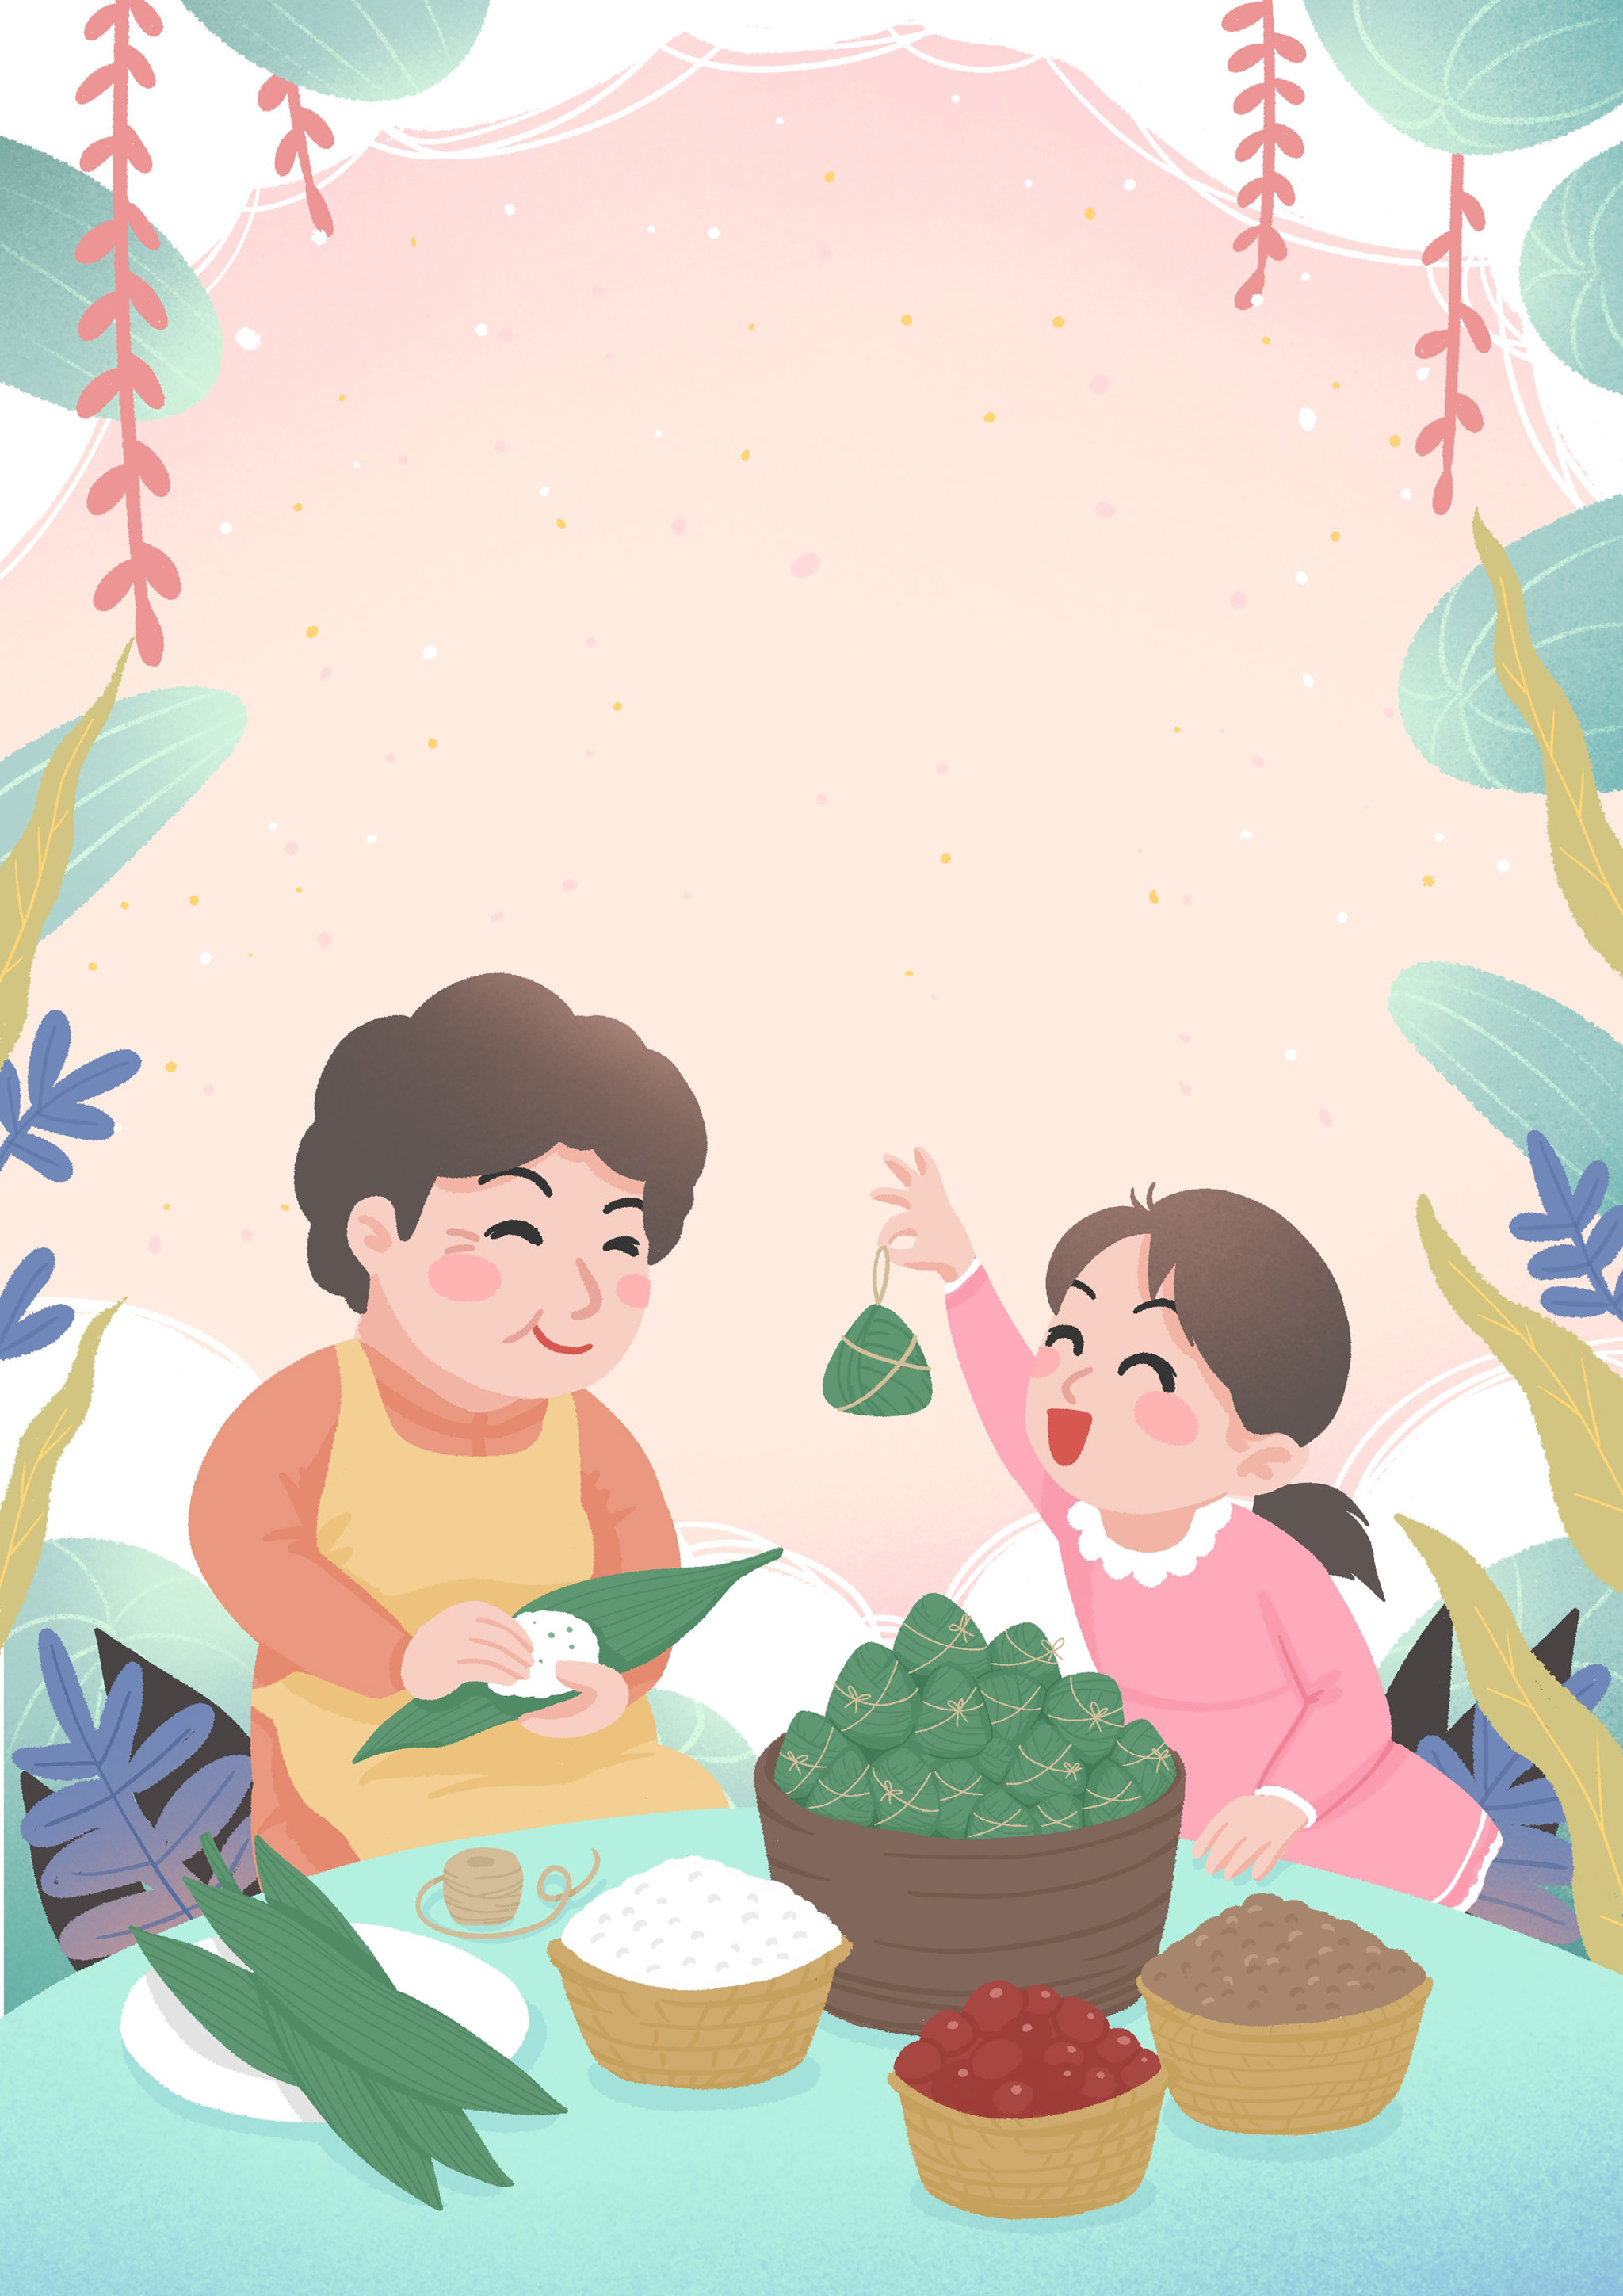 自古以来,家乡就流传着一种古老的粽子,苏木枧水粽